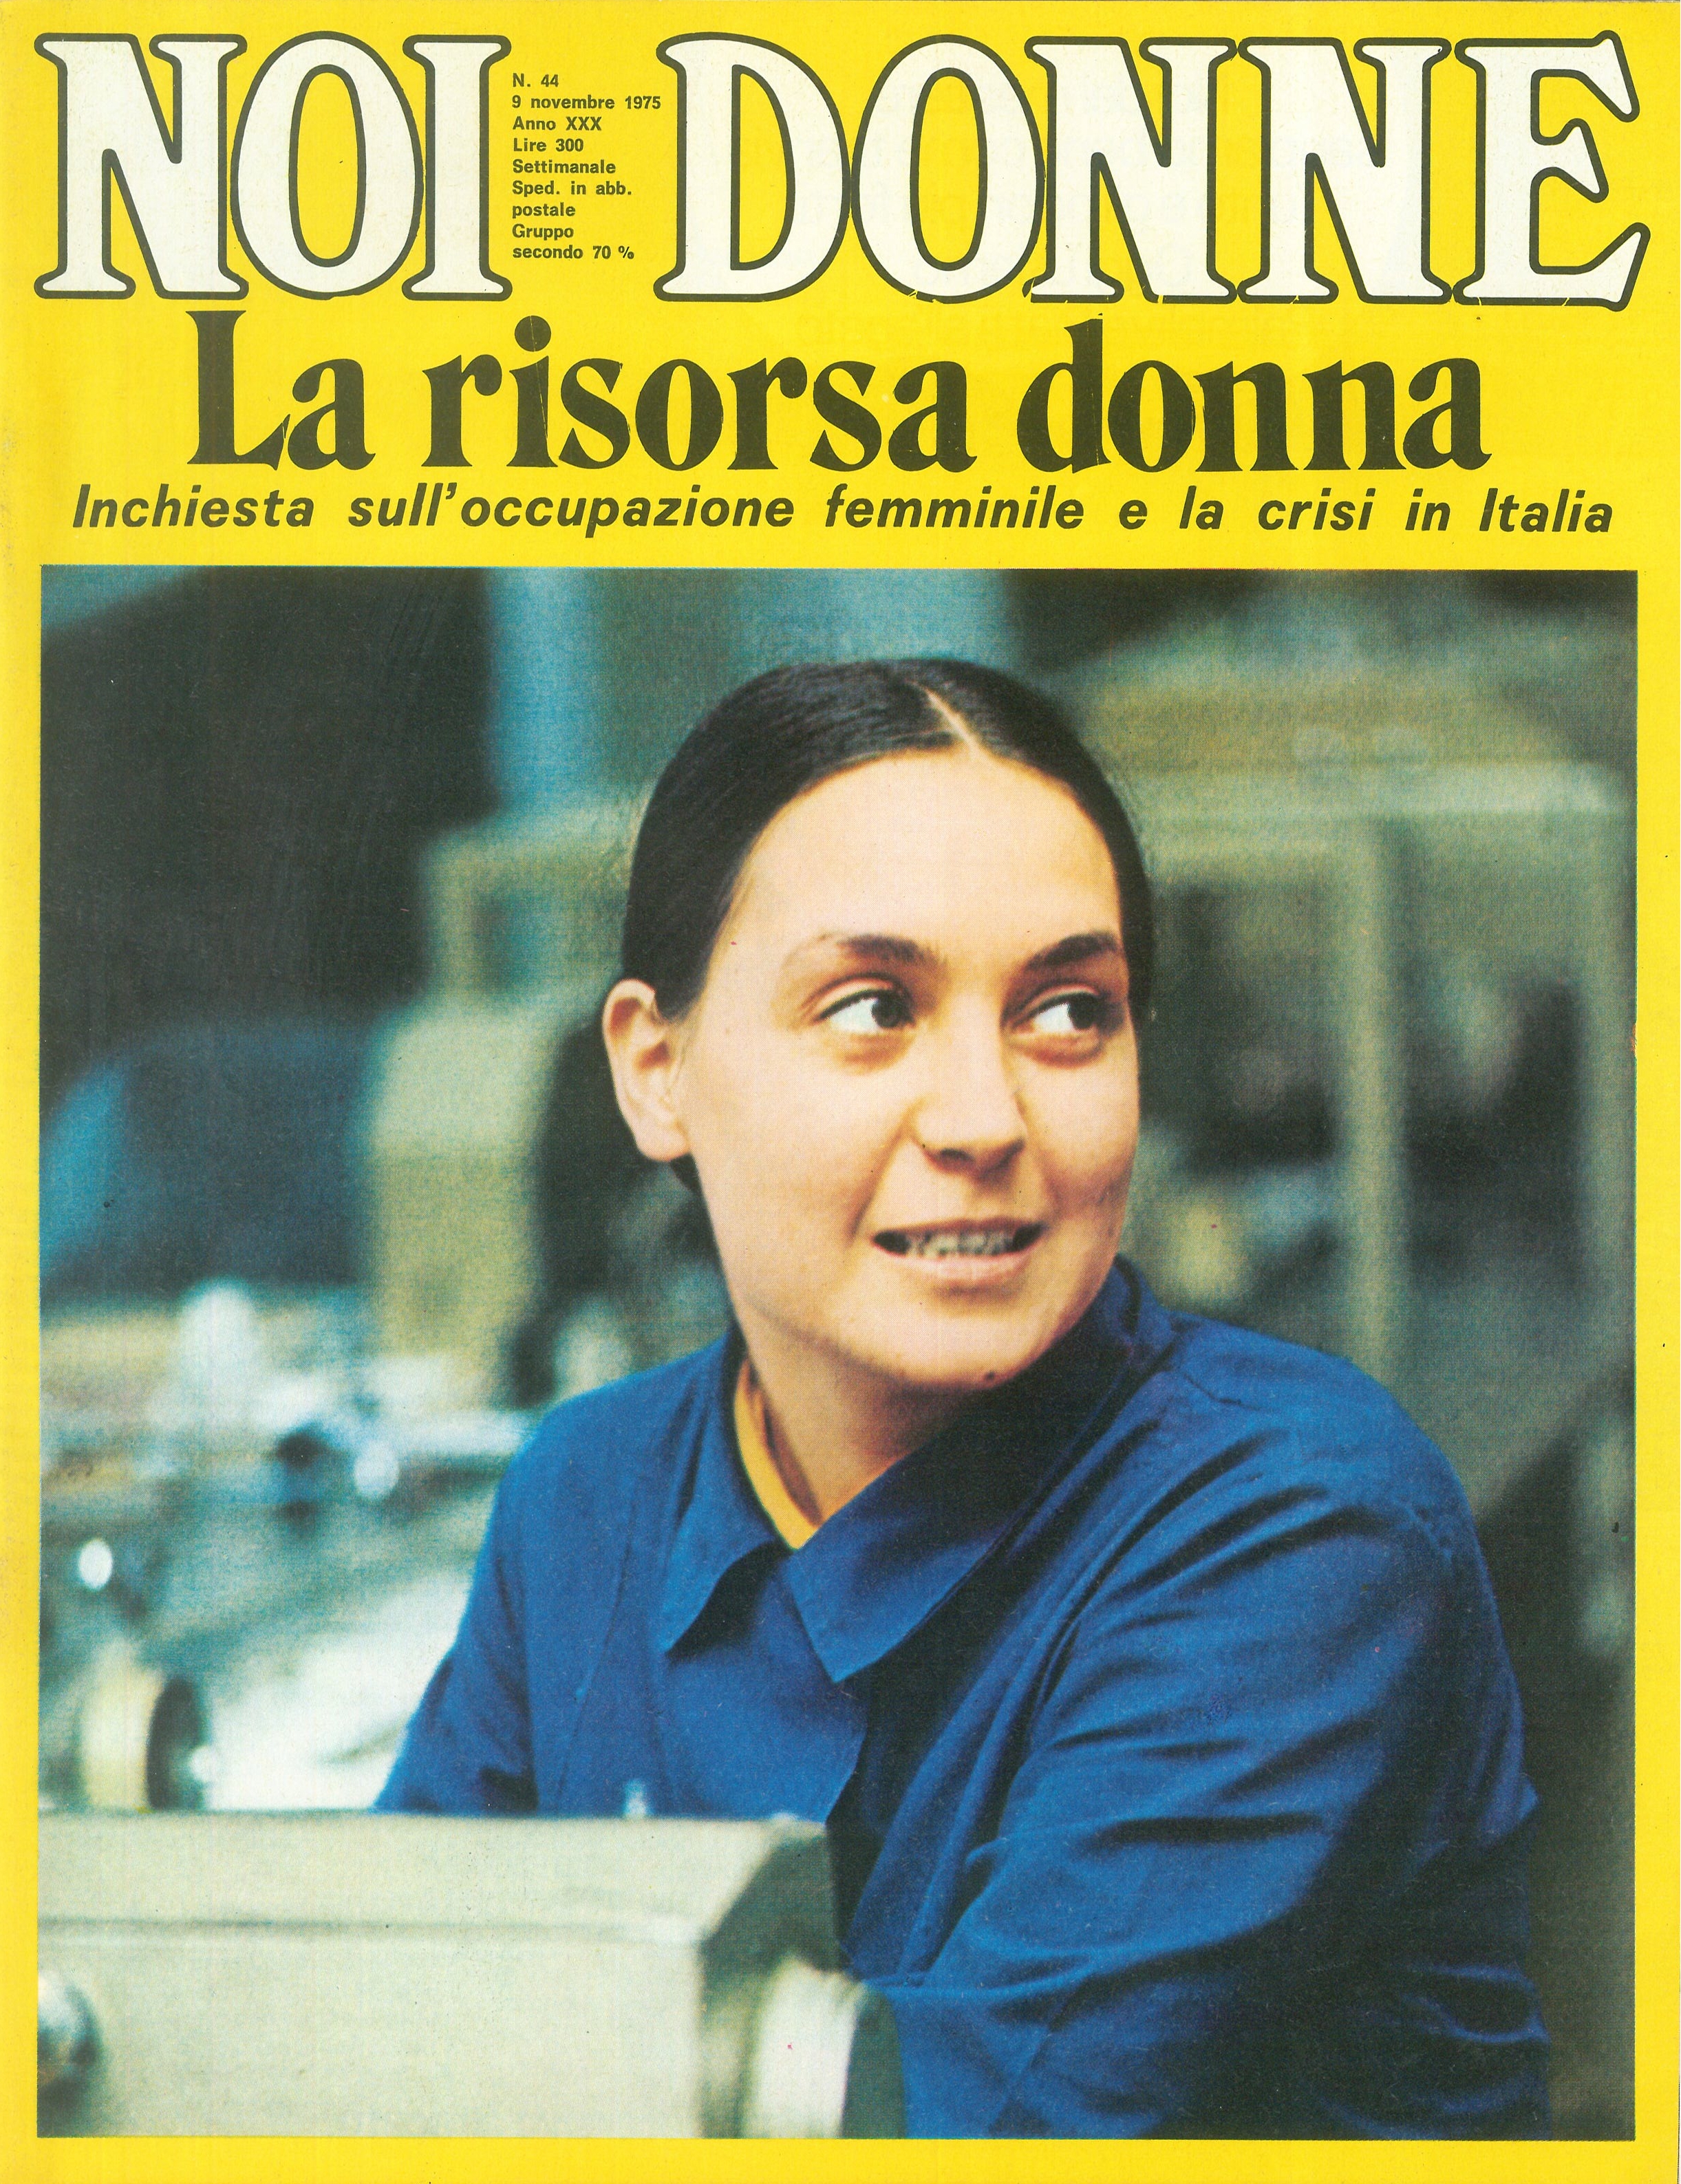 Foto: L'occupazione femminile e la crisi in Italia